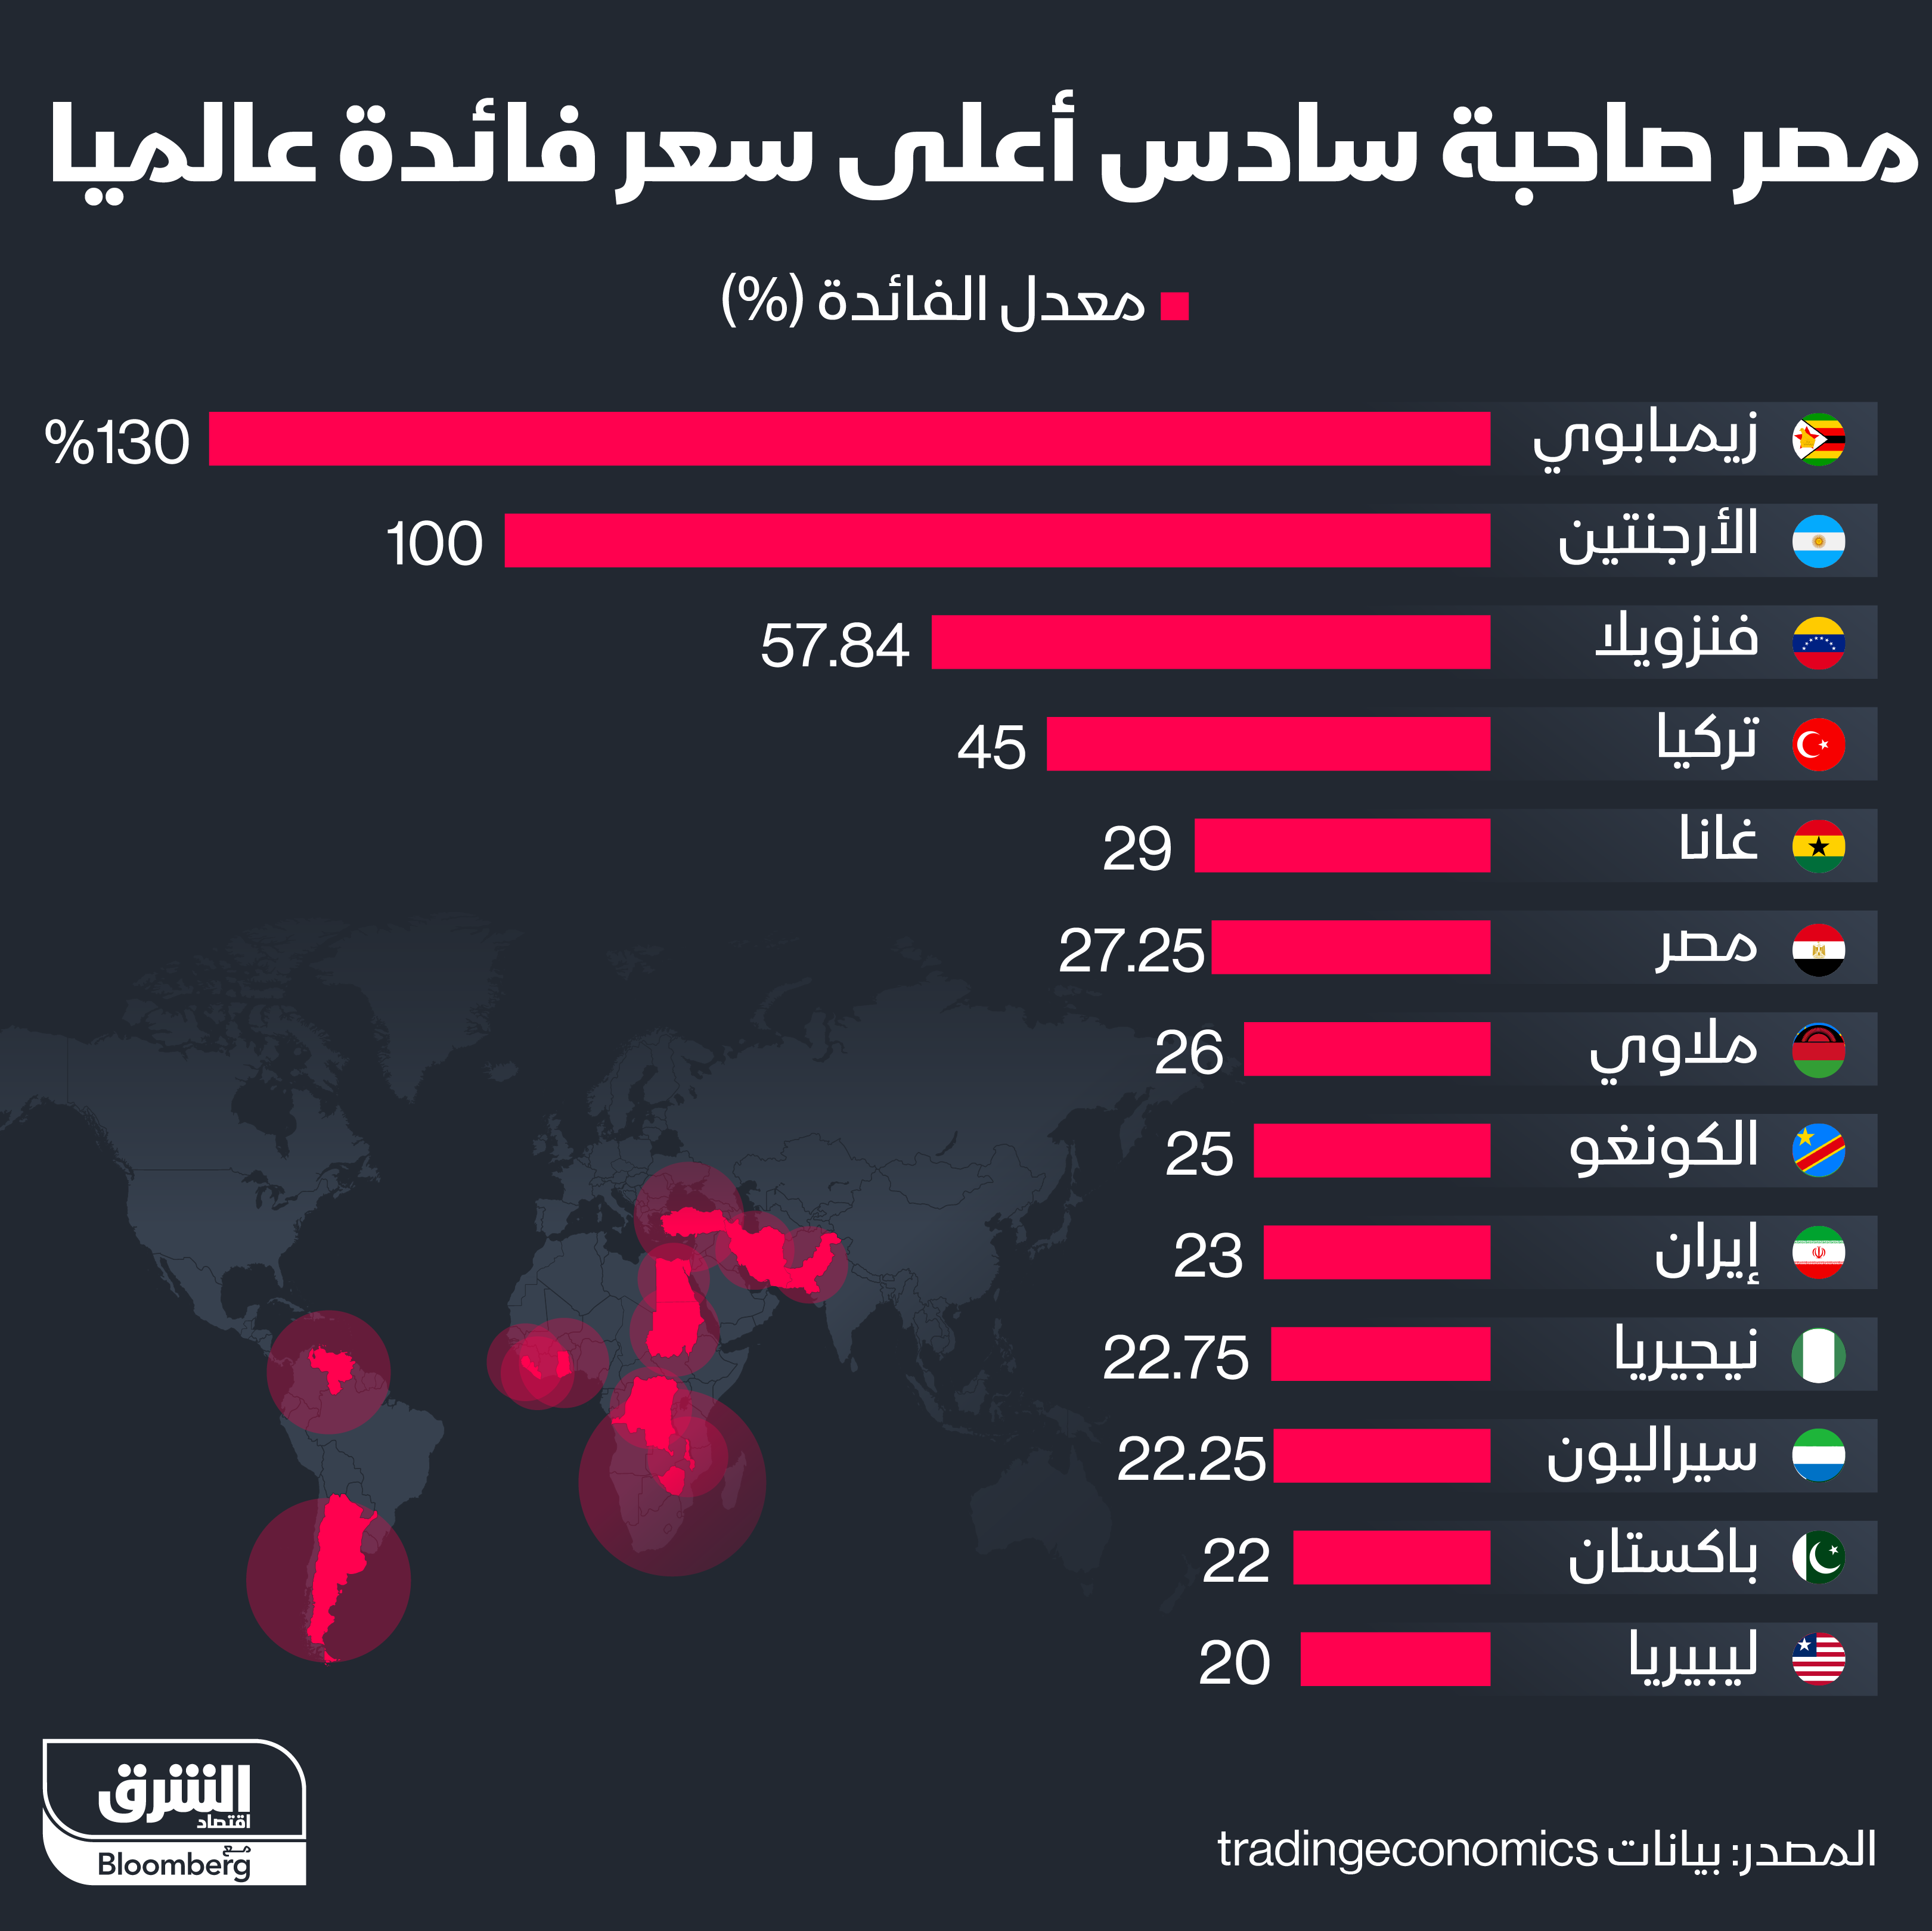 الدول التي لديها أعلى أسعار للفائدة حول العالم